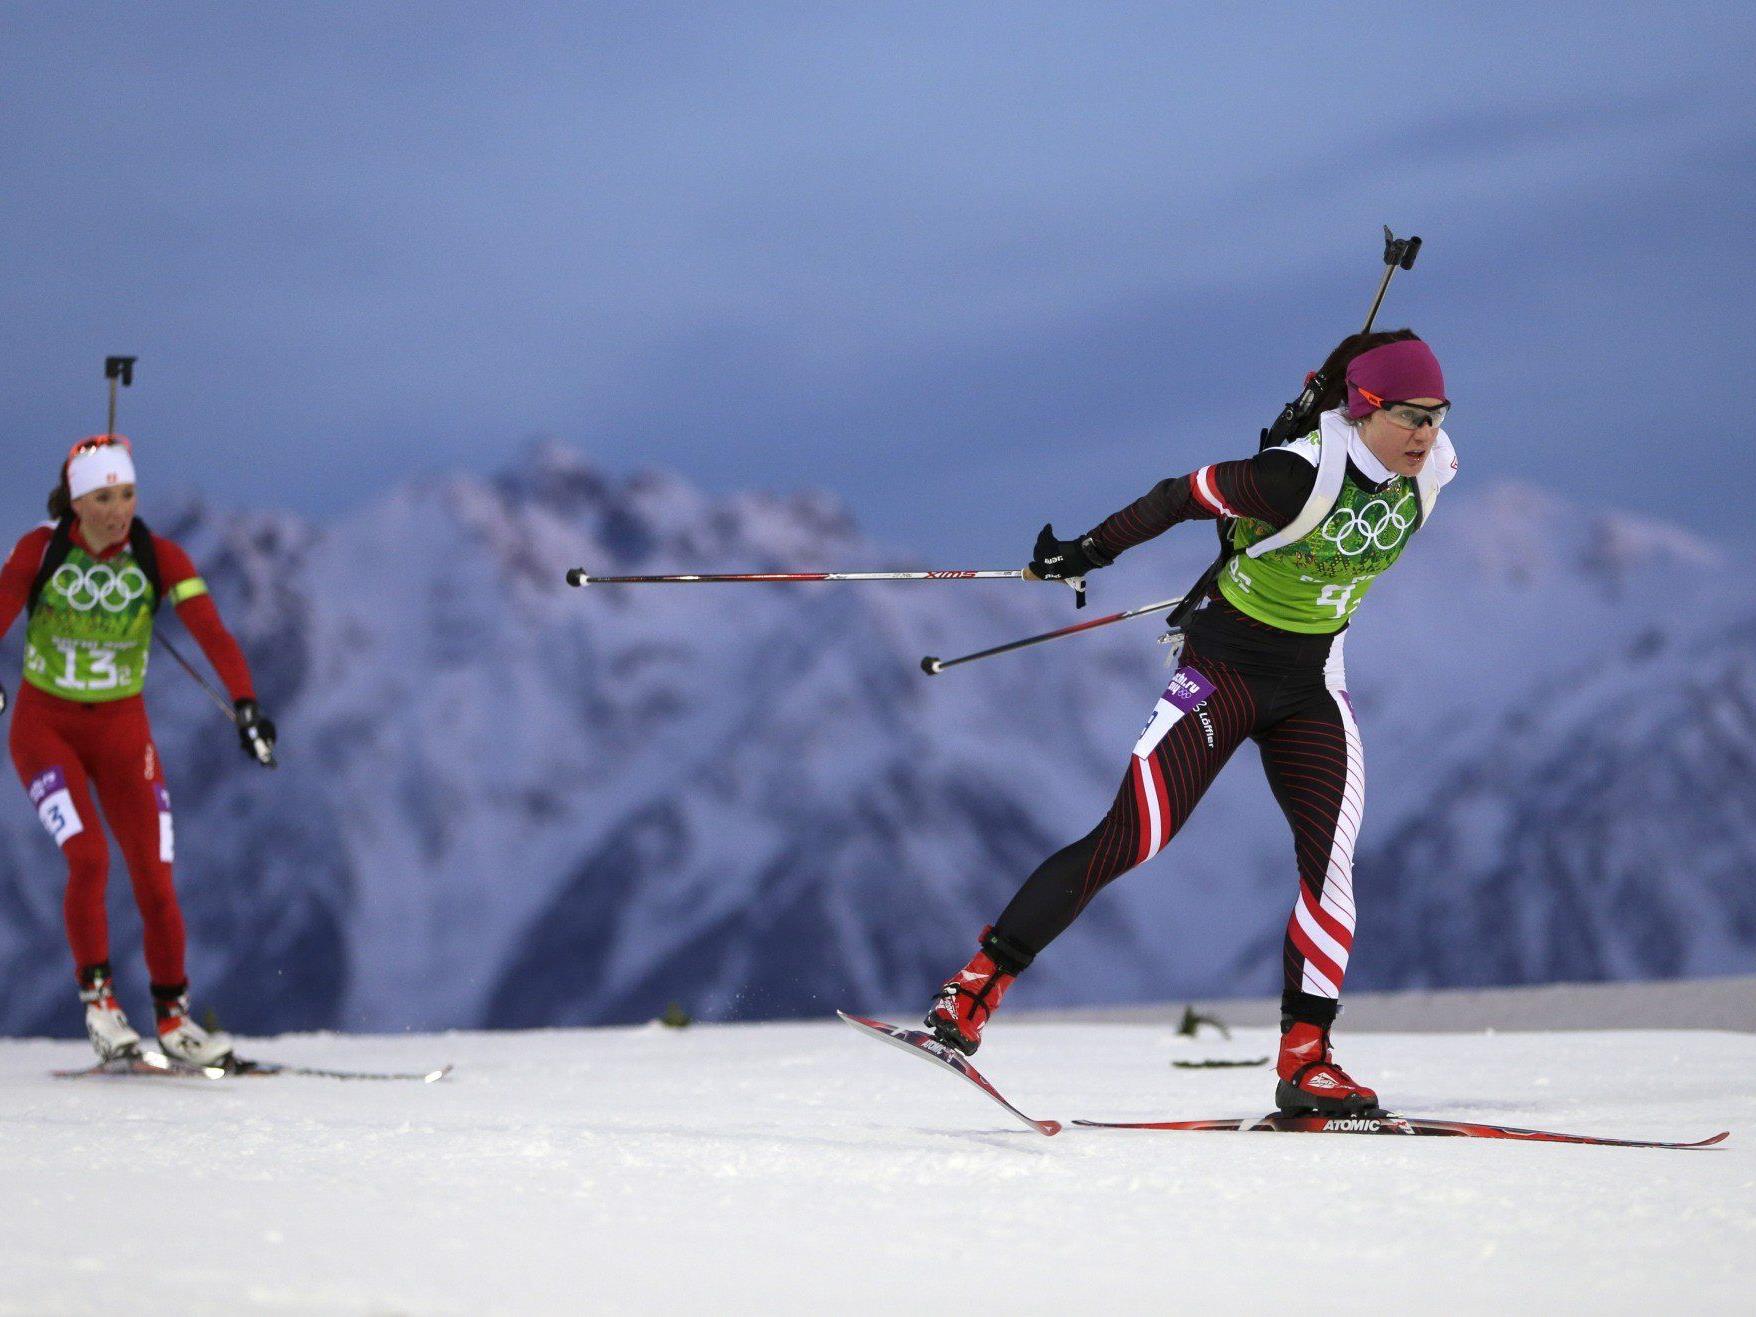 Österreichs Biathlon-Herren holten in der Staffel eine Bronze-Medaille bei den Olympischen Wintespielen in Sotschi.